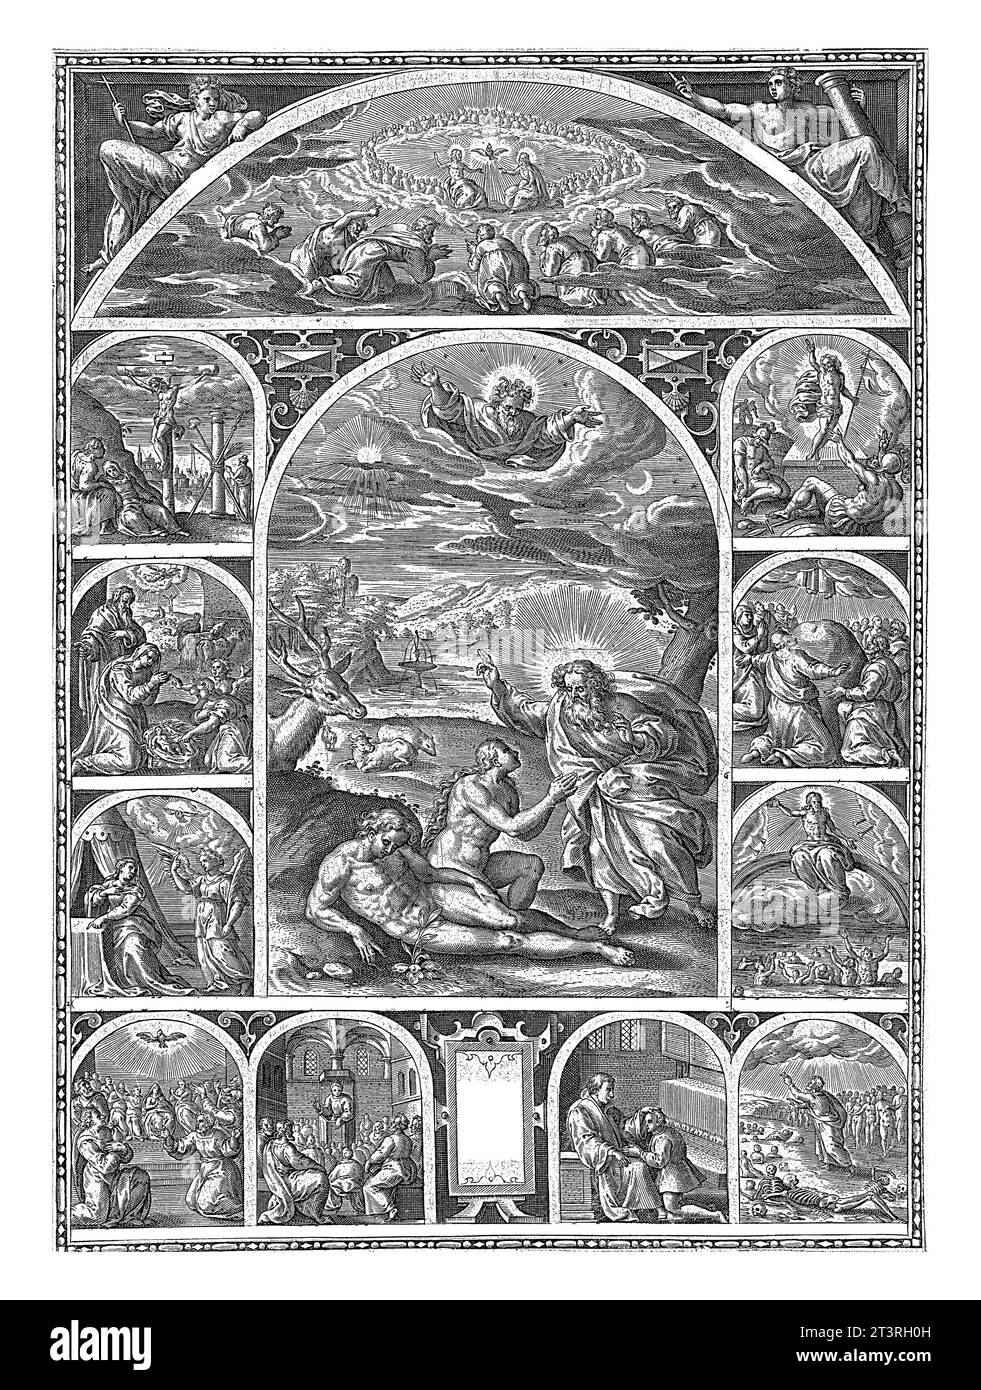 Création d'Adam et Eve et scènes de la vie du Christ, anonyme, 1600 - 1699 Dieu crée Adam et Eve au paradis (ci-dessous). Banque D'Images